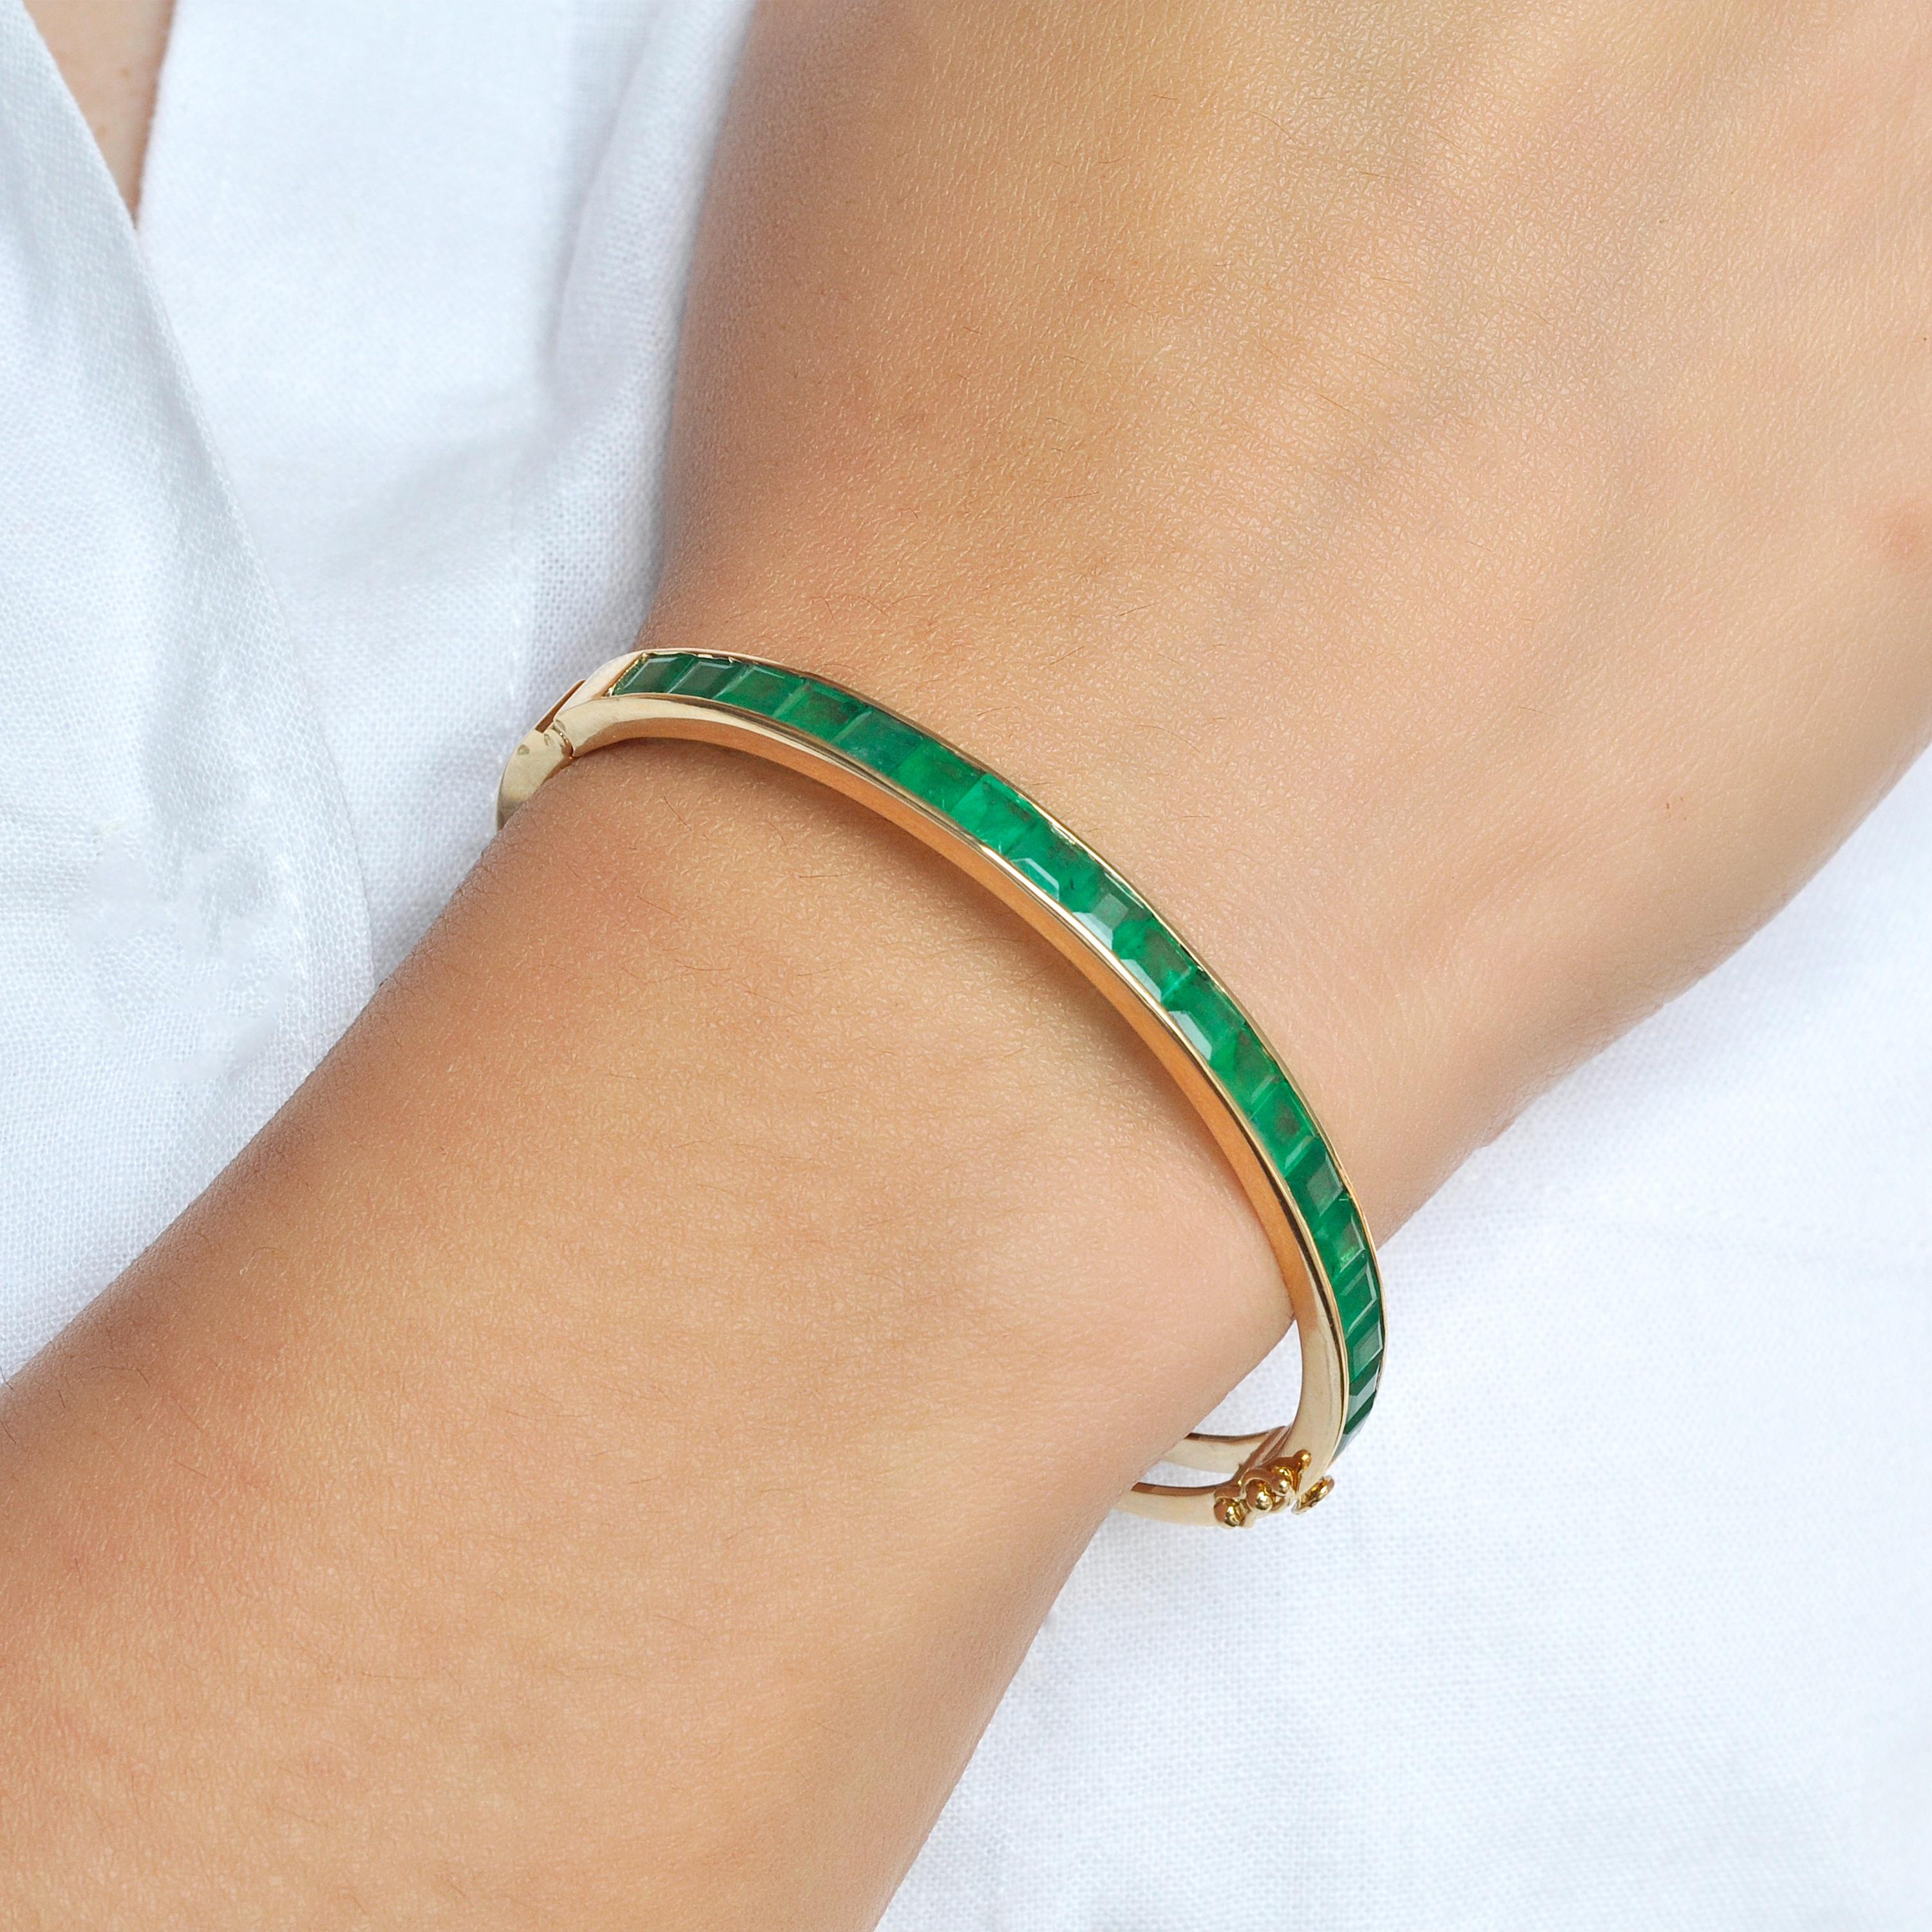 Modernes Armband aus 18 Karat Gelbgold mit einem 4 mm großen, quadratischen brasilianischen Smaragd in Kanalfassung.

Erleben Sie das klassische Armband mit Smaragdbesatz, eine Verkörperung der zeitlosen Eleganz. Sein Design, eine Hommage an den